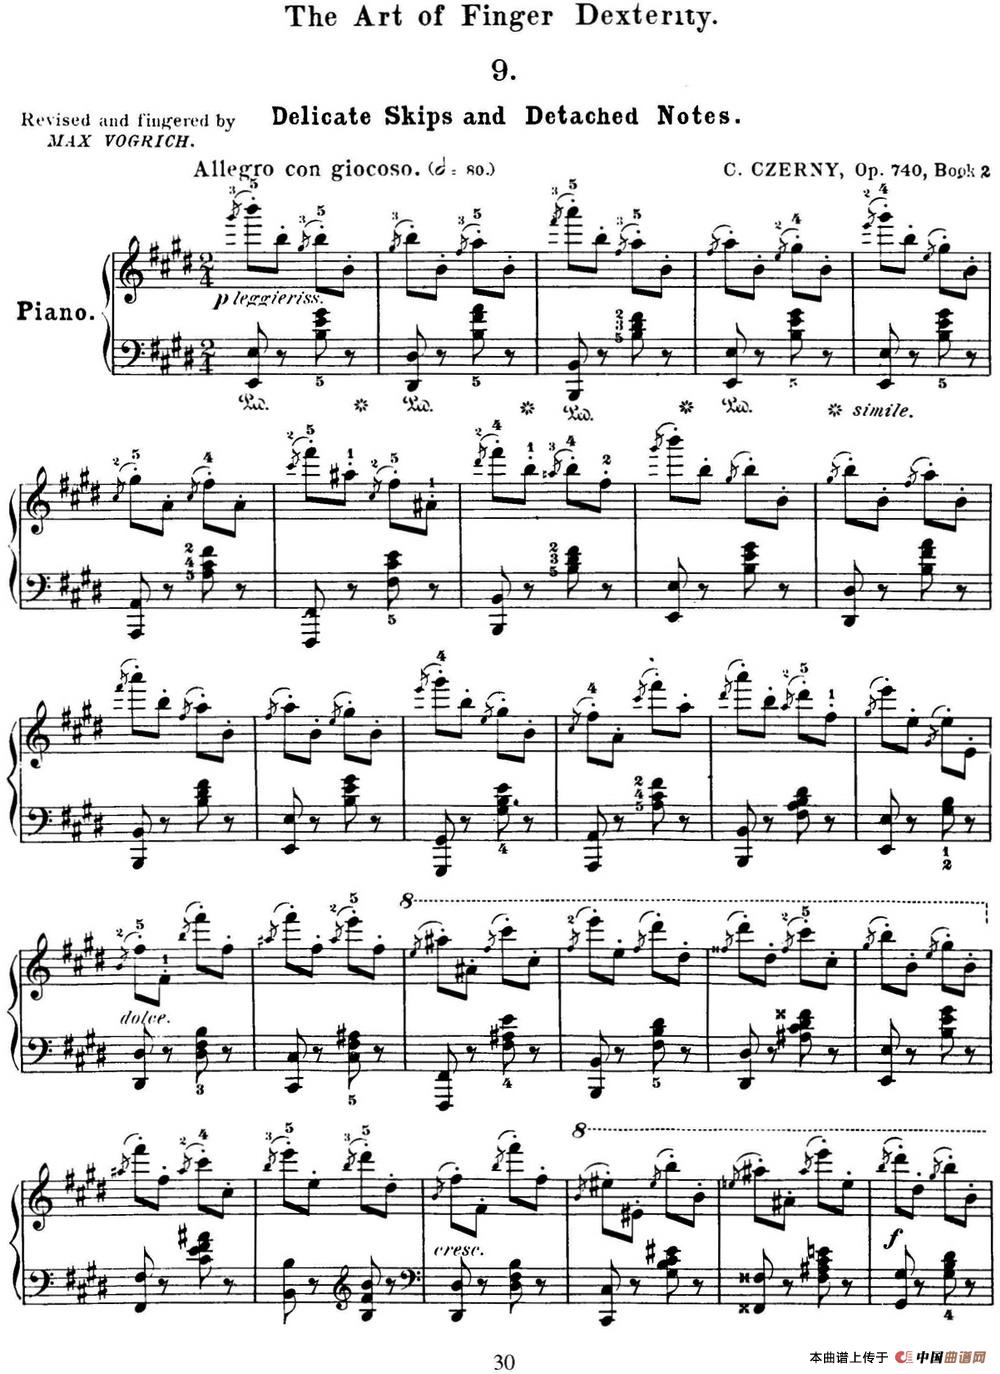 50首车尔尼Op.740钢琴手指灵巧技术练习曲（NO.9）(1)_C740_页面_030.jpg